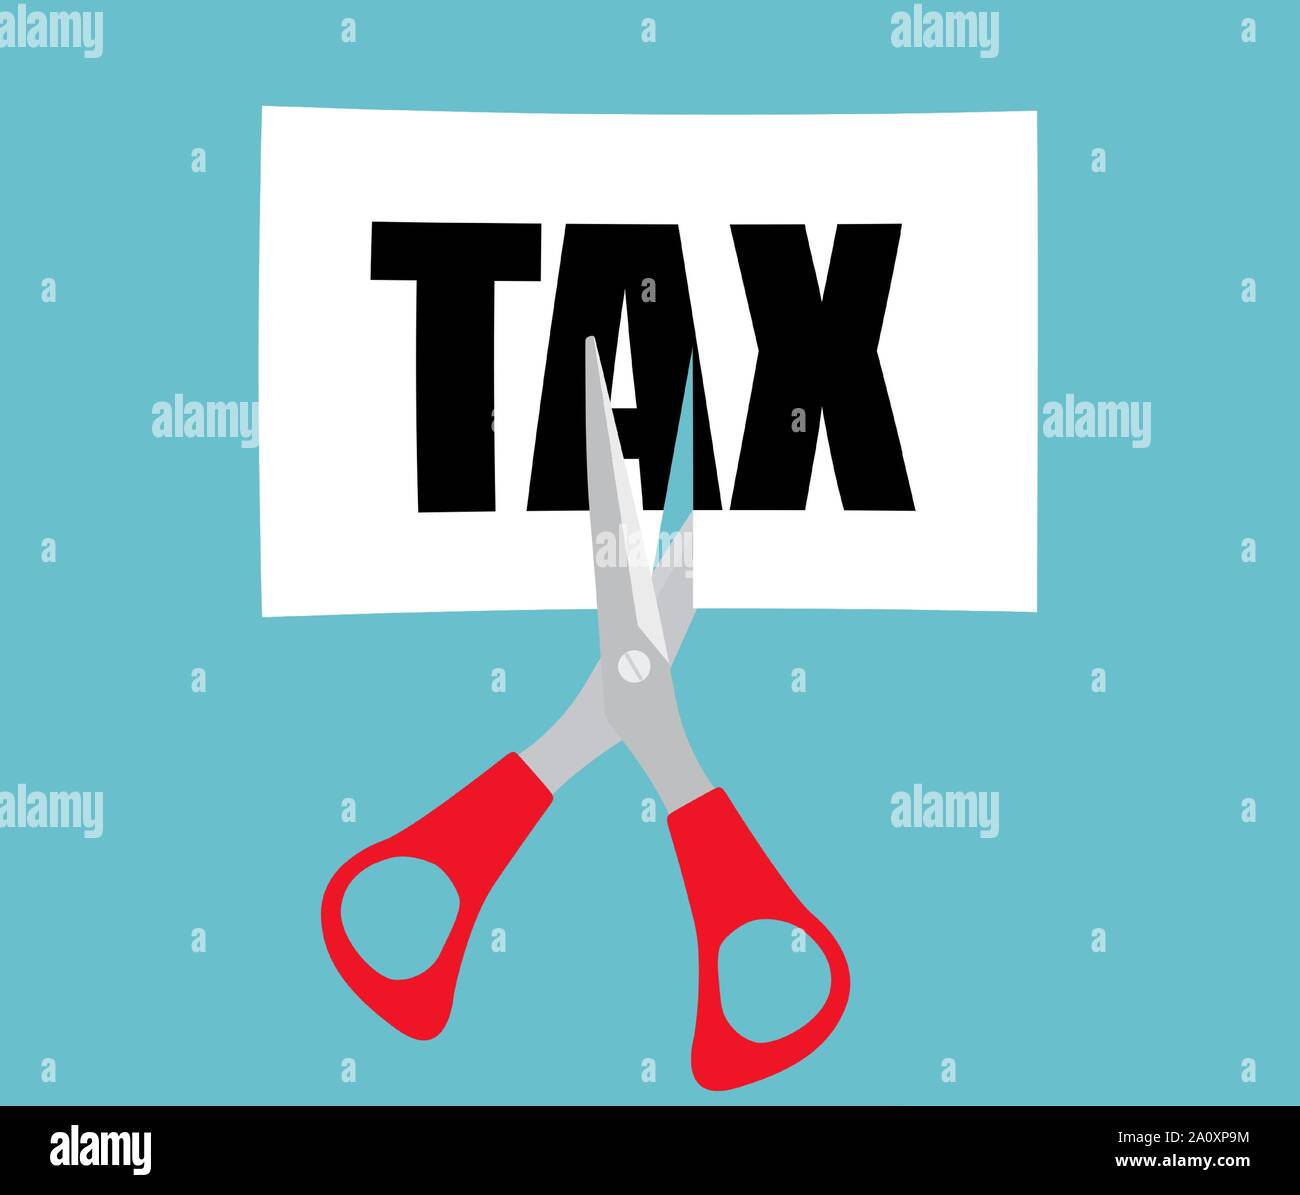 Wirtschaft Finanzen Konzept mit einer Schere schneiden Wort Steuer. Vector Illustration Stock Vektor